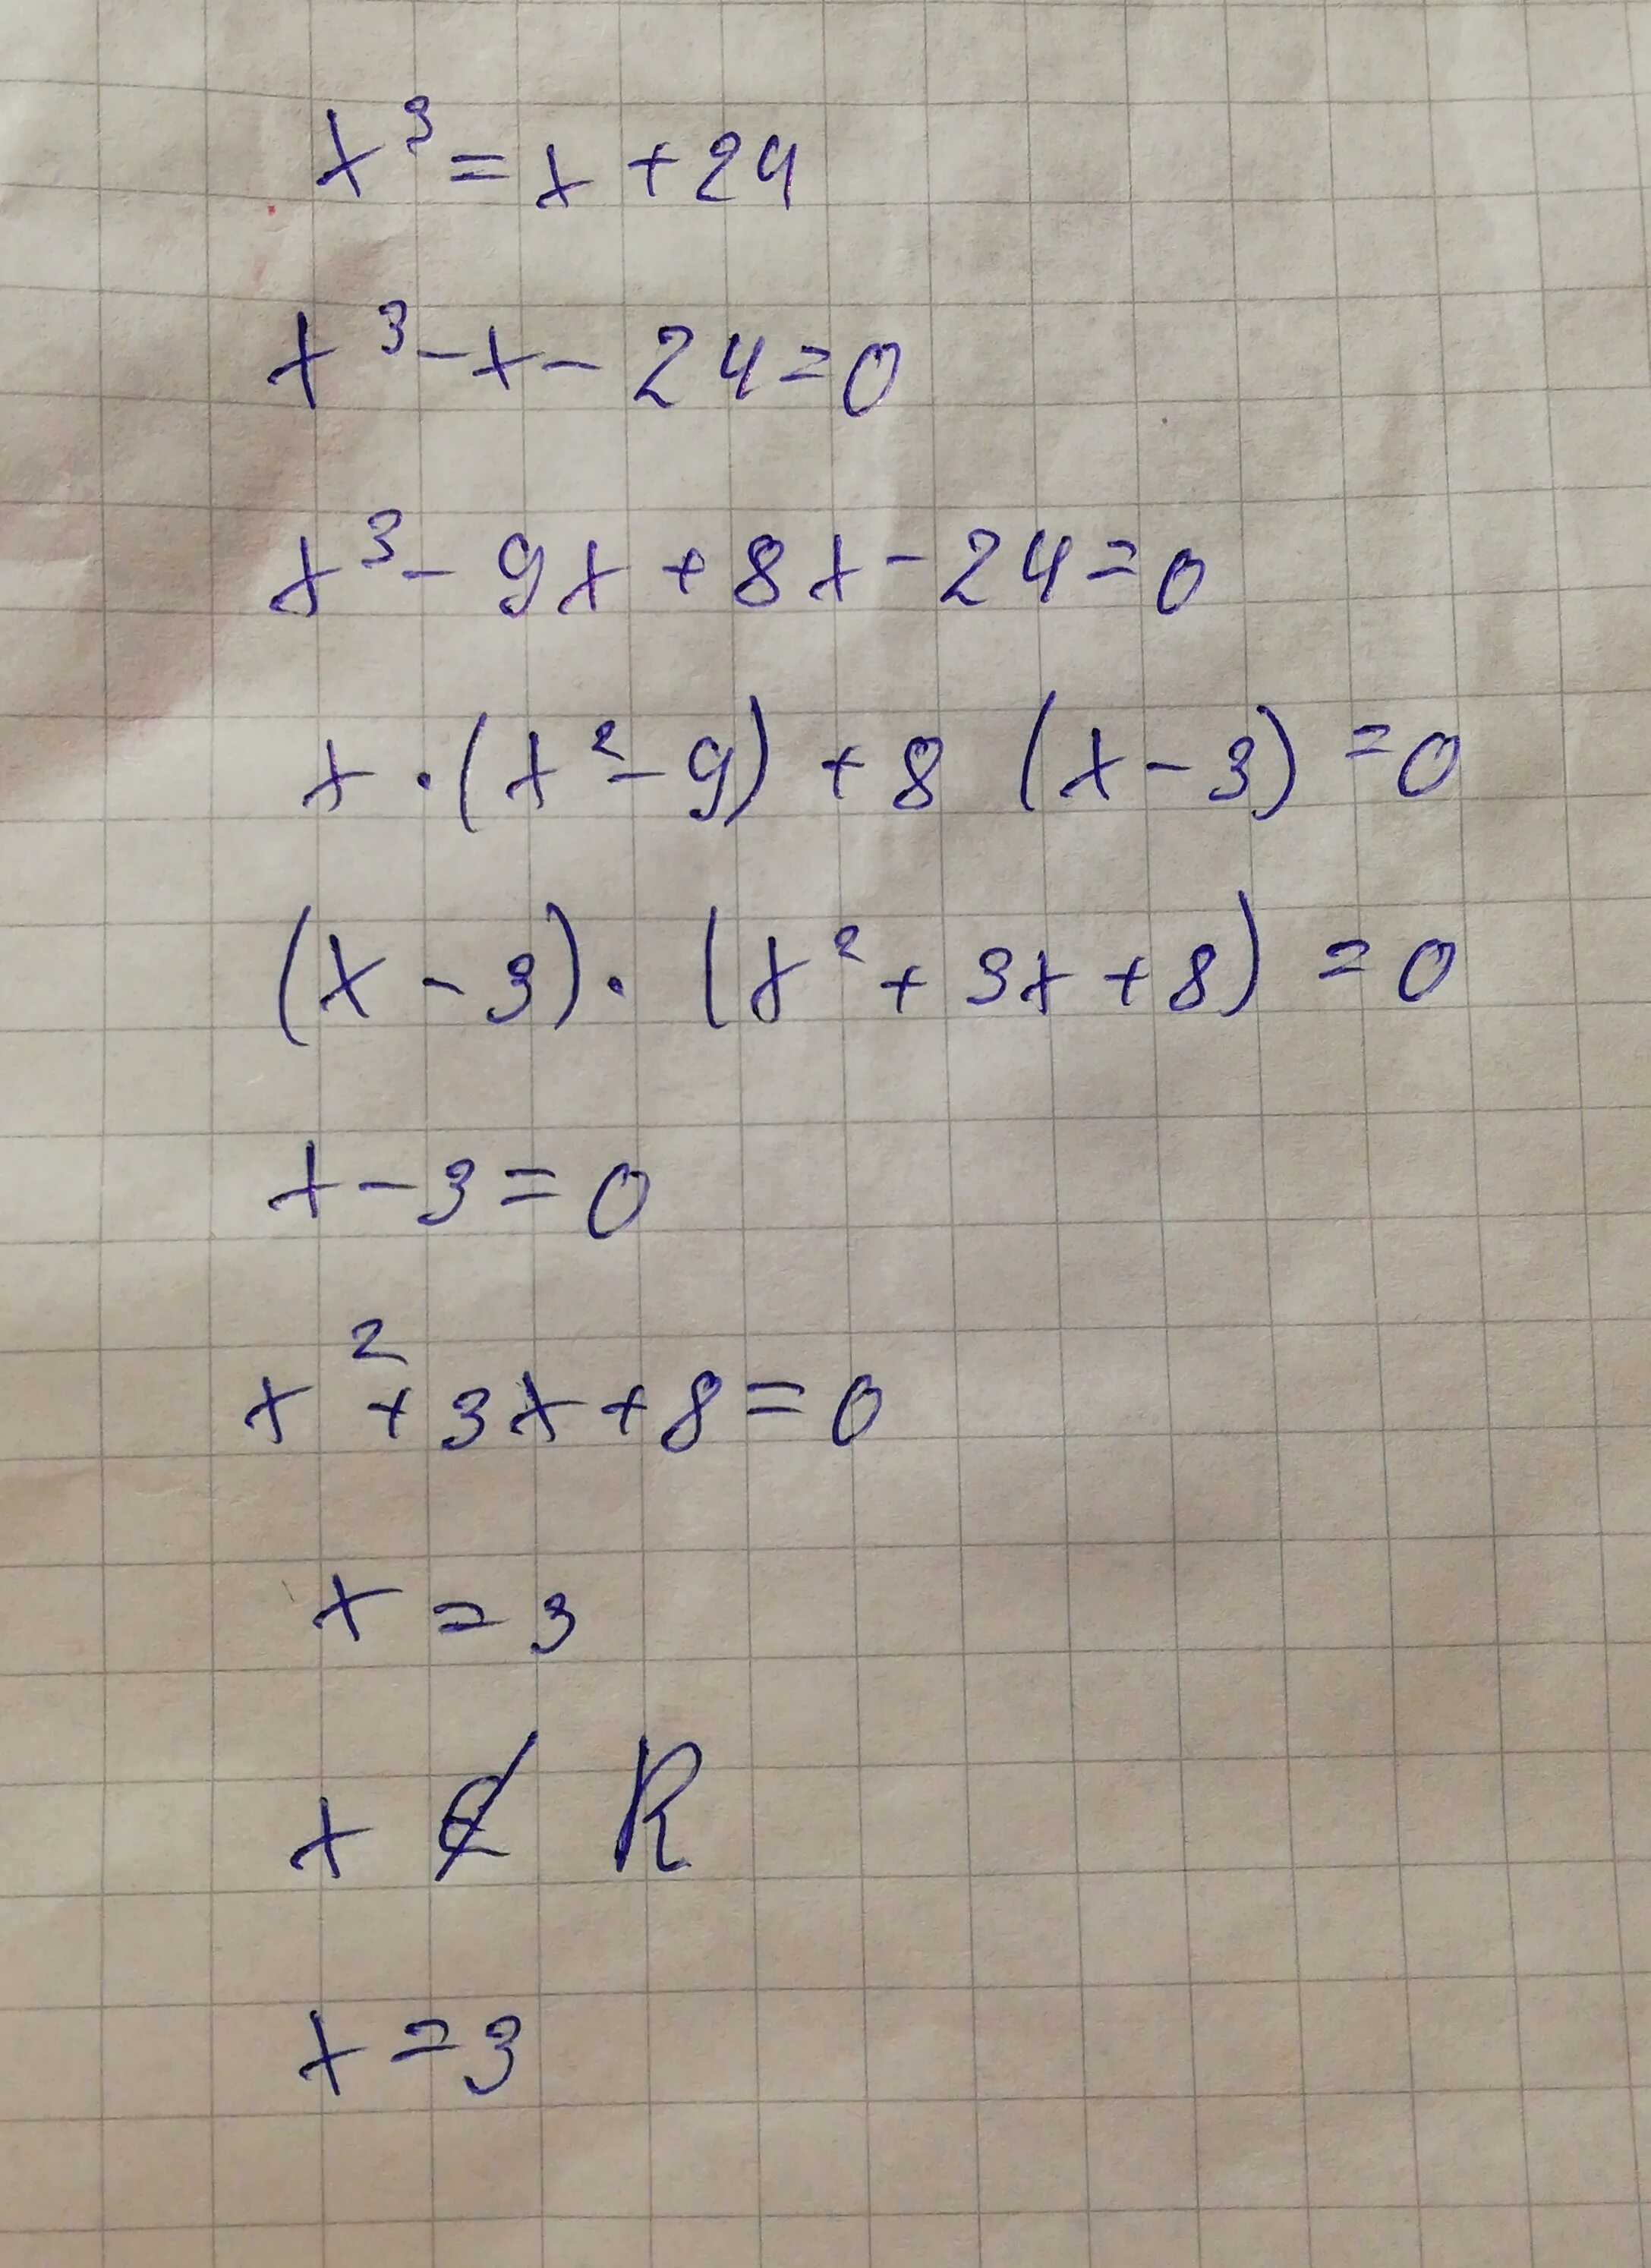 24 х 2 6 х 4 решите. 3х-х=24. Уравнение с х3. На 3 х. Решение уравнения 3*(x+8)-24=6.